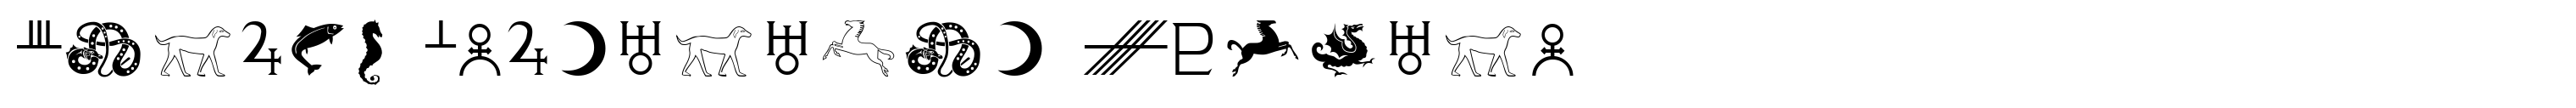 Celtic Astrologer Symbols